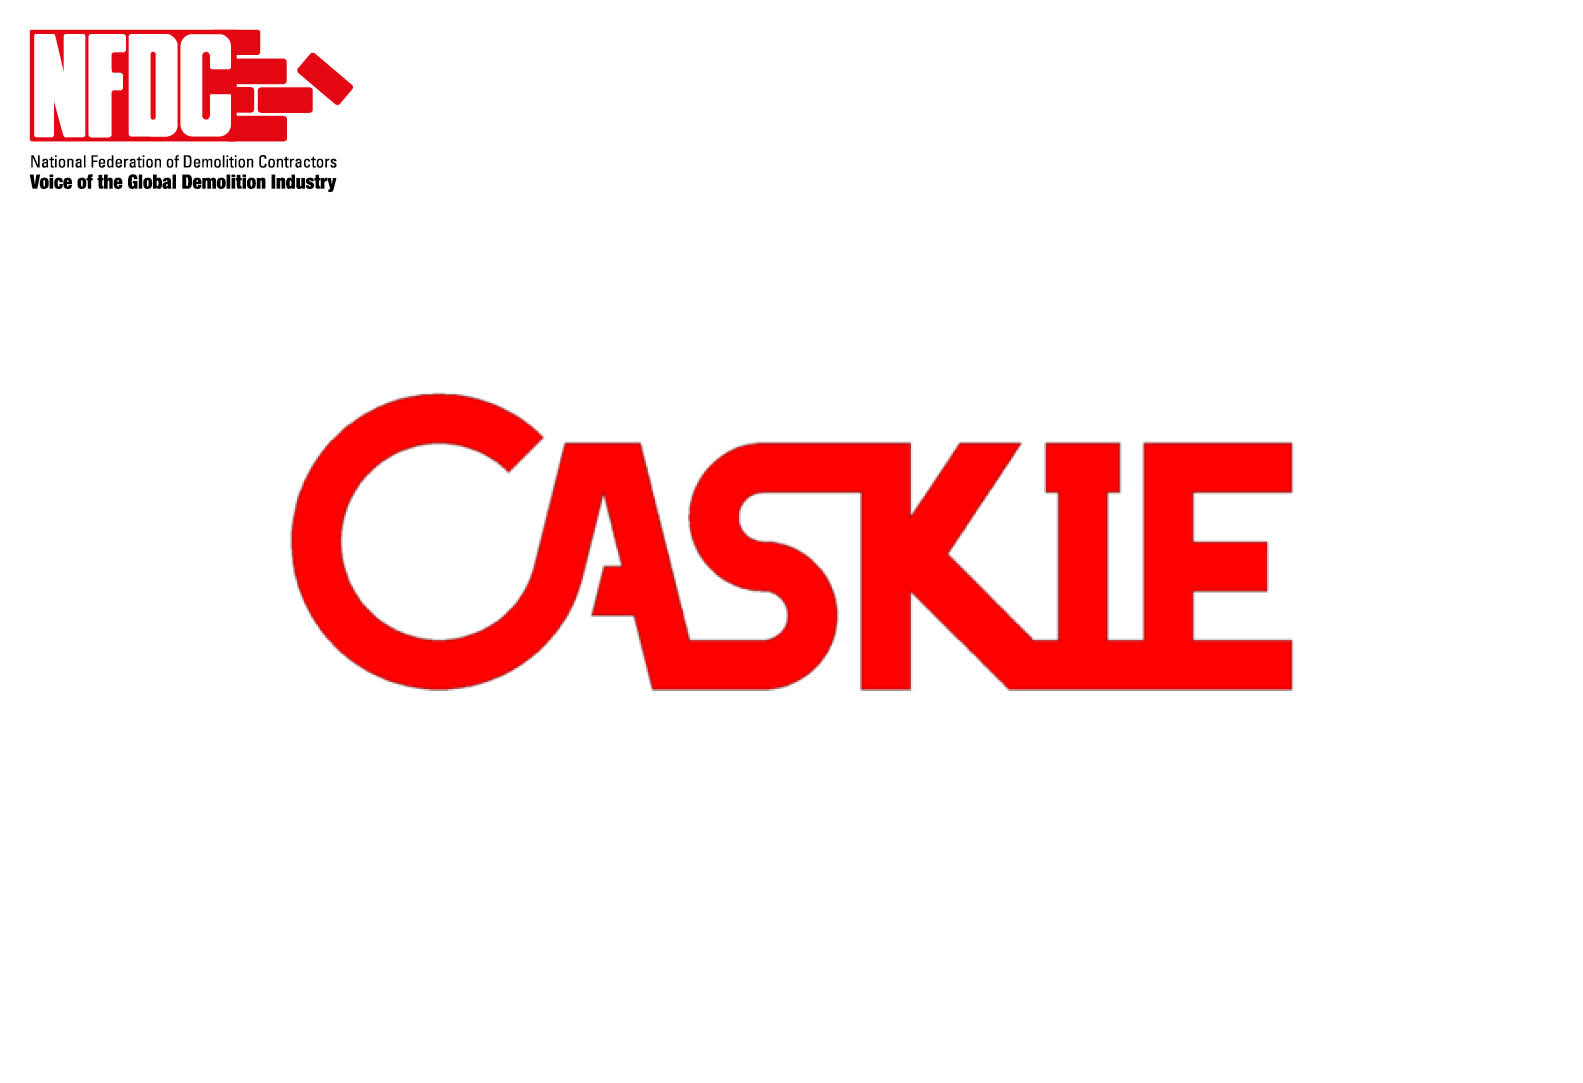 Caskie Ltd